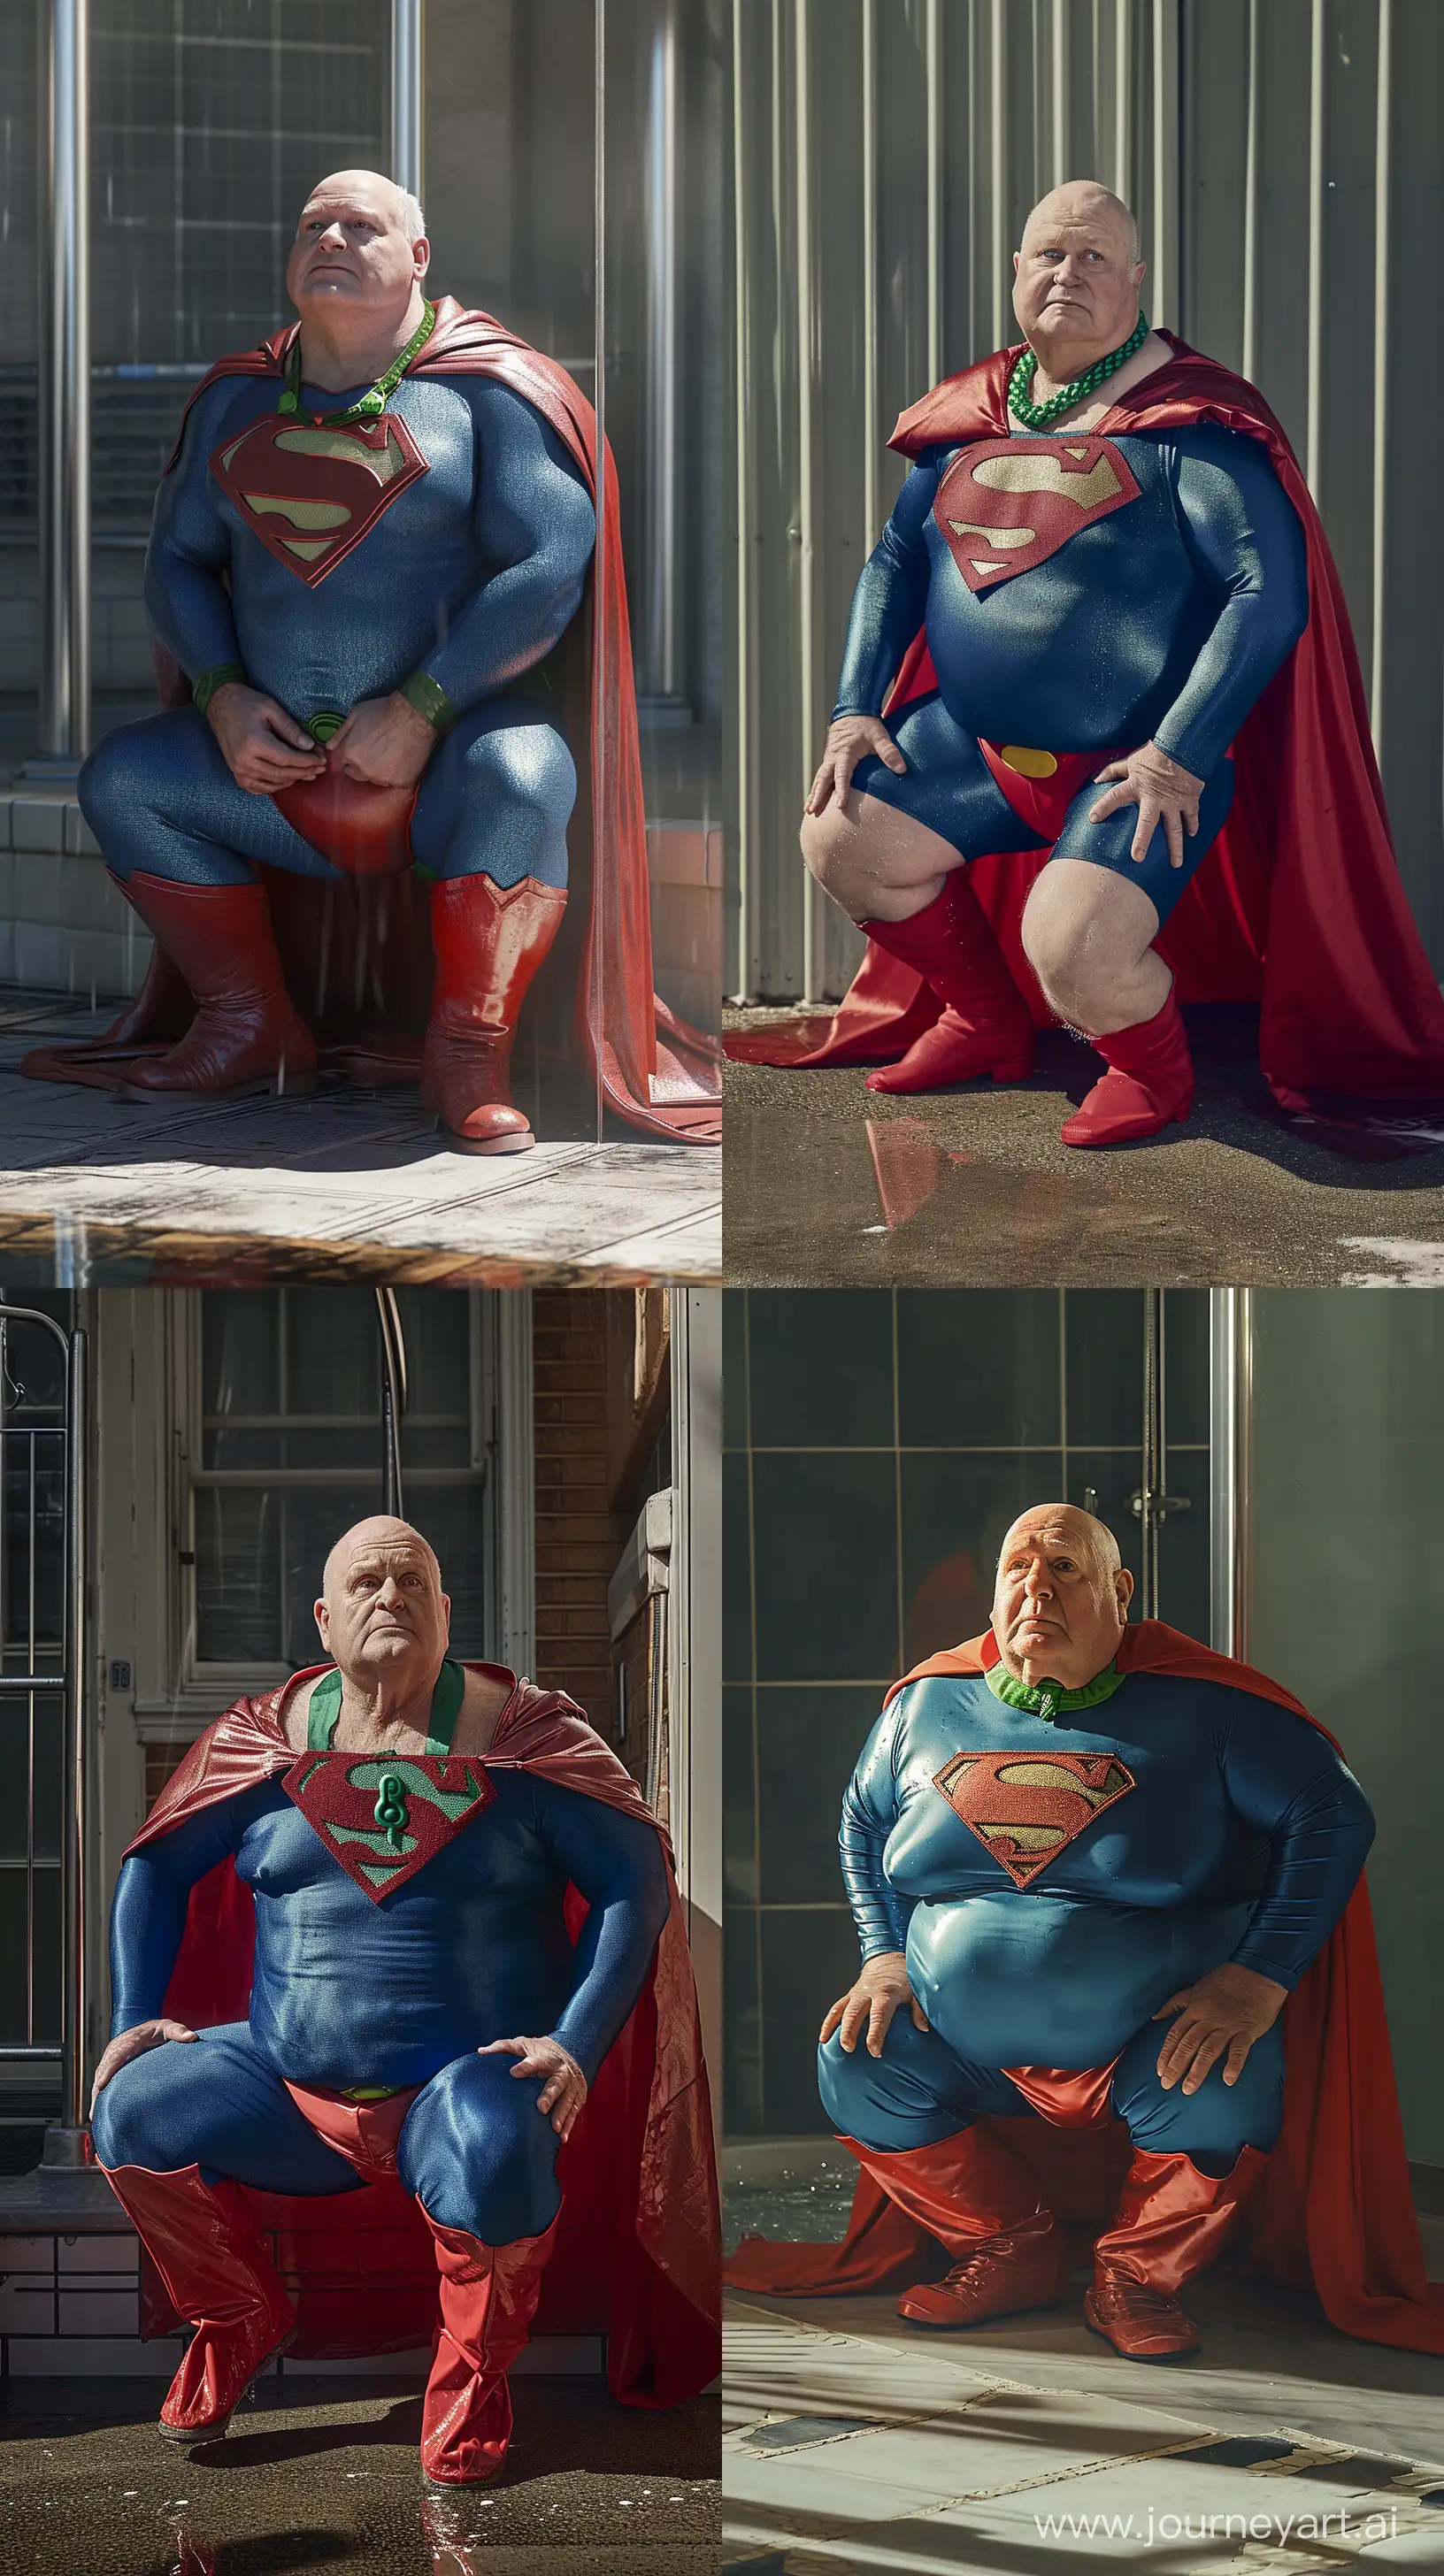 Elderly-Superman-Enjoys-Refreshing-Shower-in-Vibrant-Costume